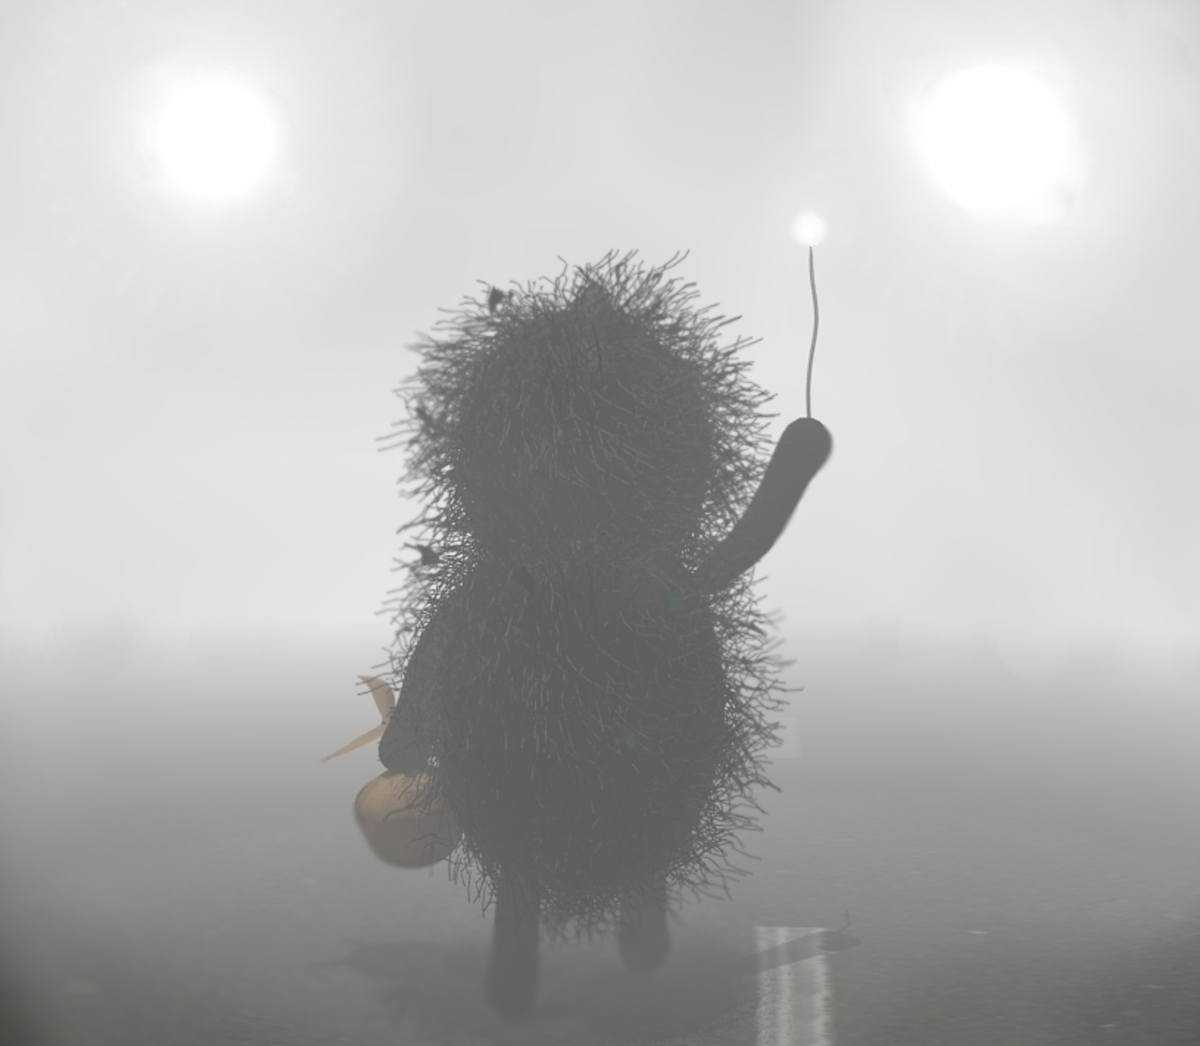 Ежик уходит в туман. Ушла в туман. Ежик уходящий в туман. Ёжик в тумане с узелком. Легко друг друга потерять